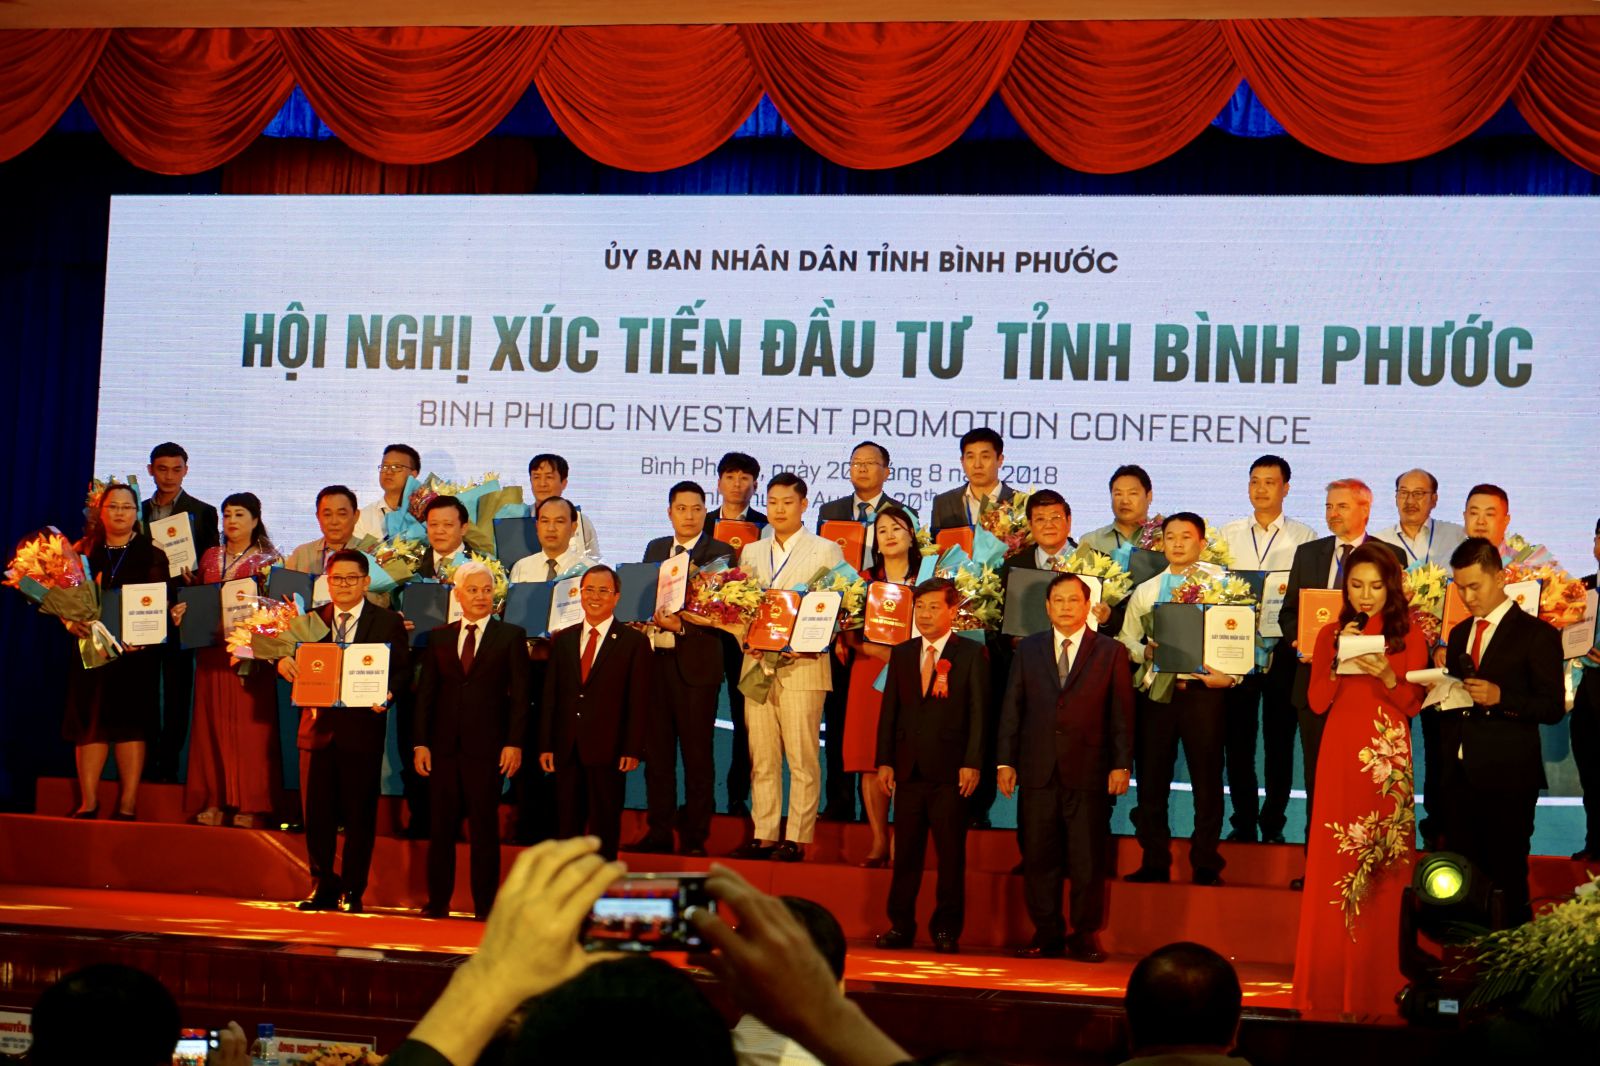 Lãnh đạo tỉnh Bình Phước đã trao Quyết định chủ trương đầu tư, Giấy chứng nhận đăng ký đầu tư cho 10 dự án đầu tư nước ngoài và 14 dự án đầu tư trong nước.